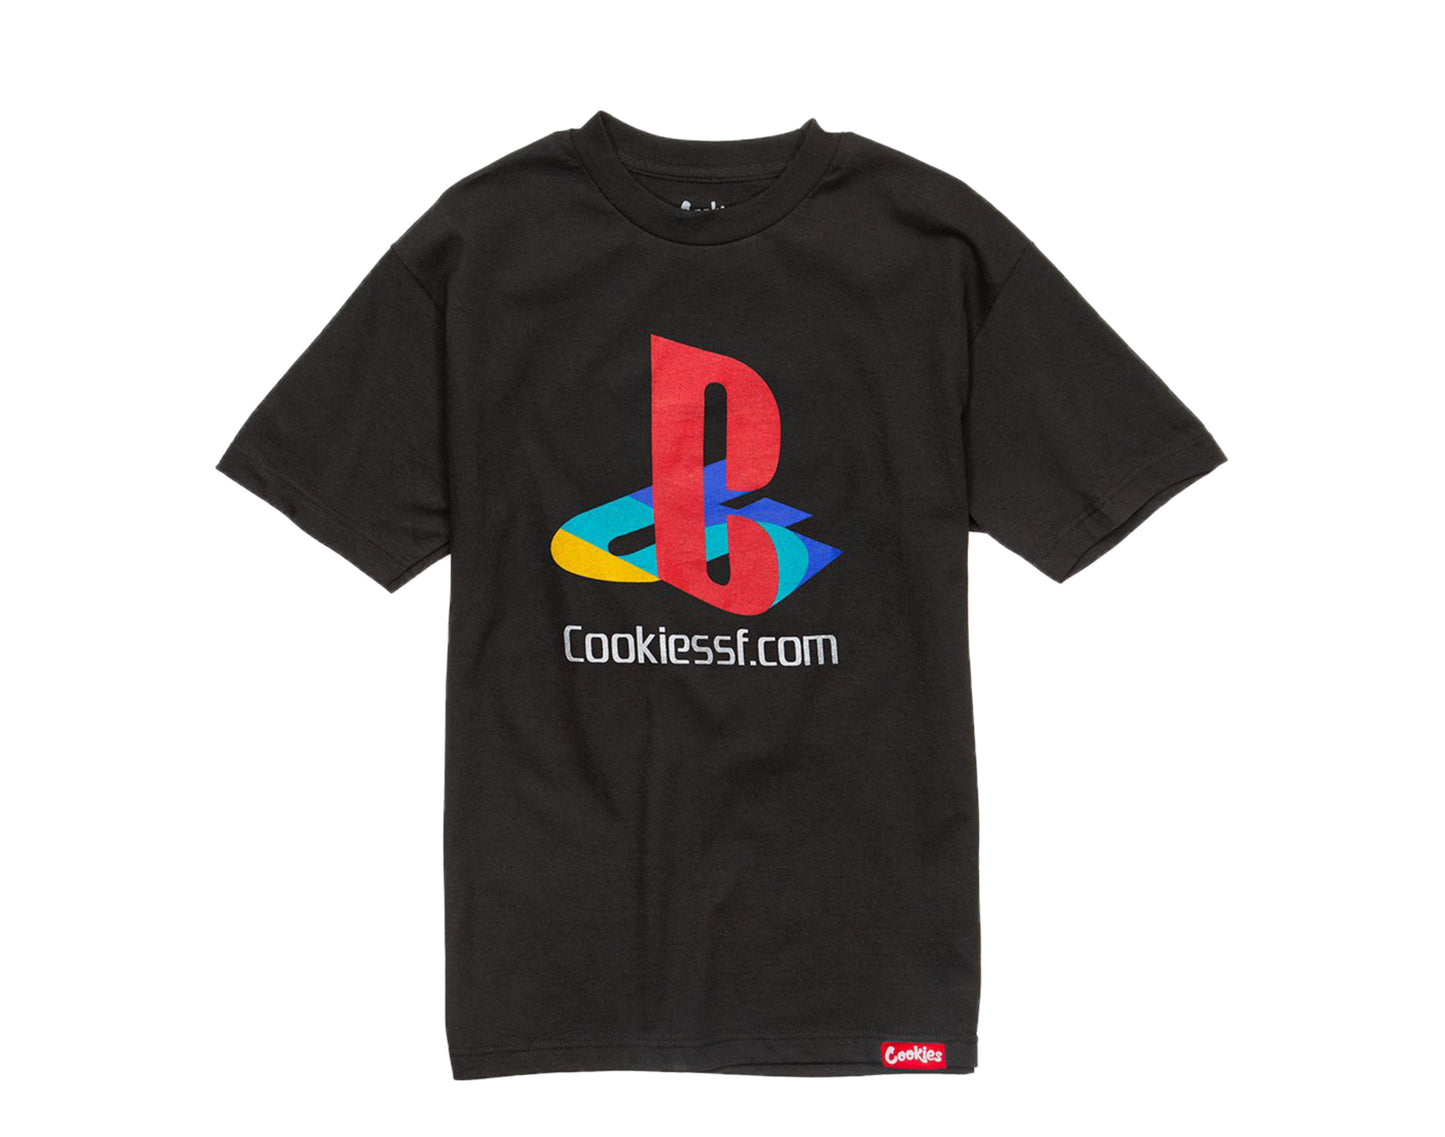 Cookies Gamer Black PS5 Men's Tee Shirt 1546T4369-BLK